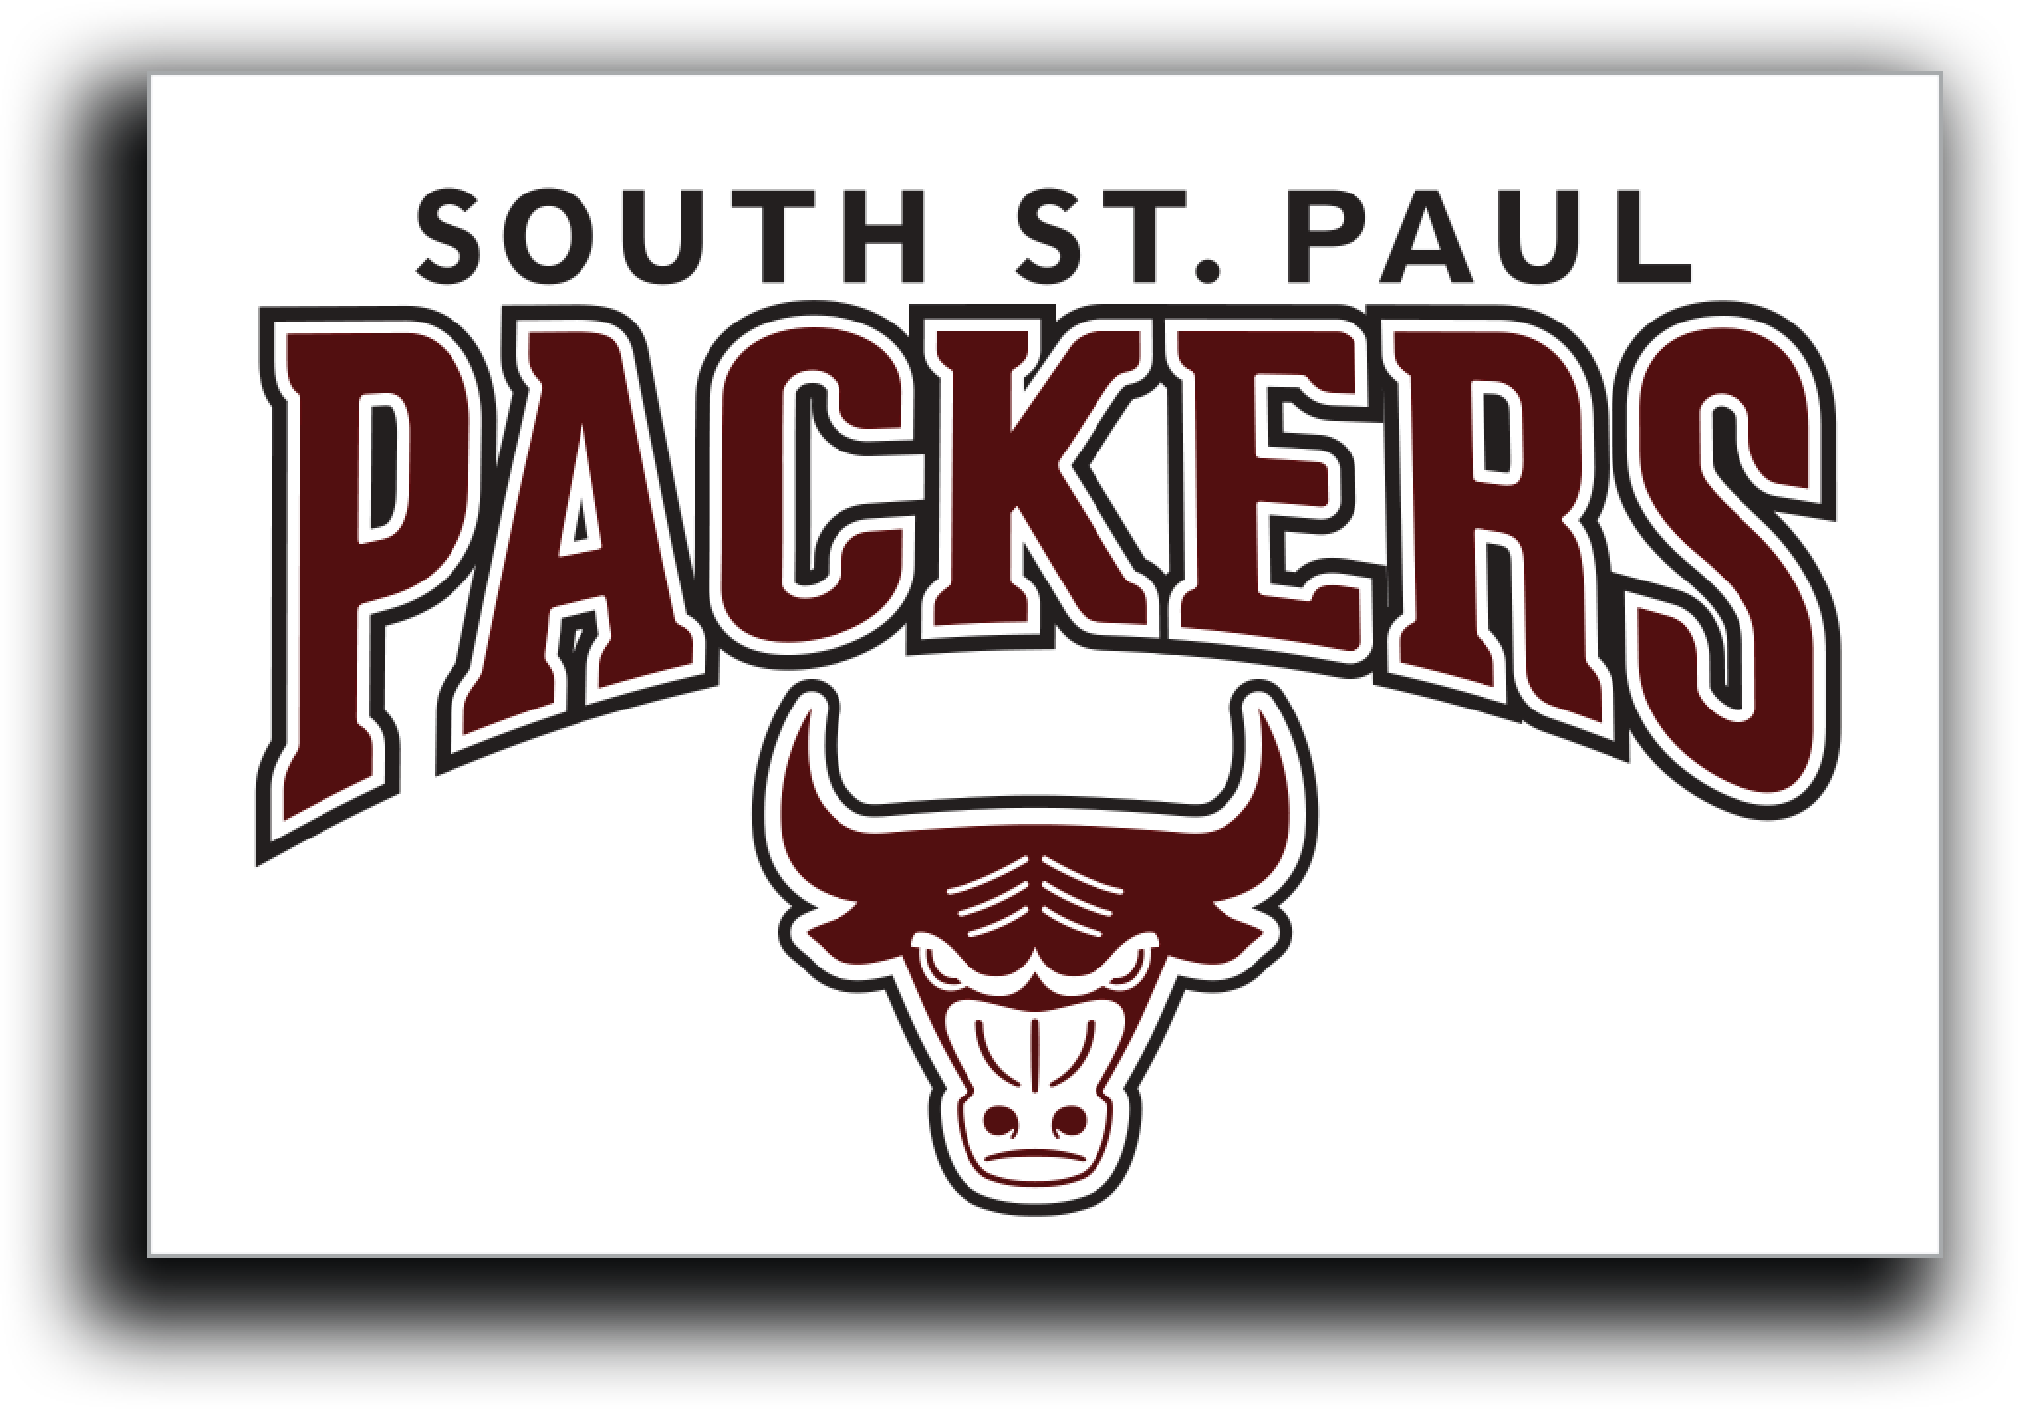 South St. Paul Packers Sticker-Stickers-Advanced Sportswear